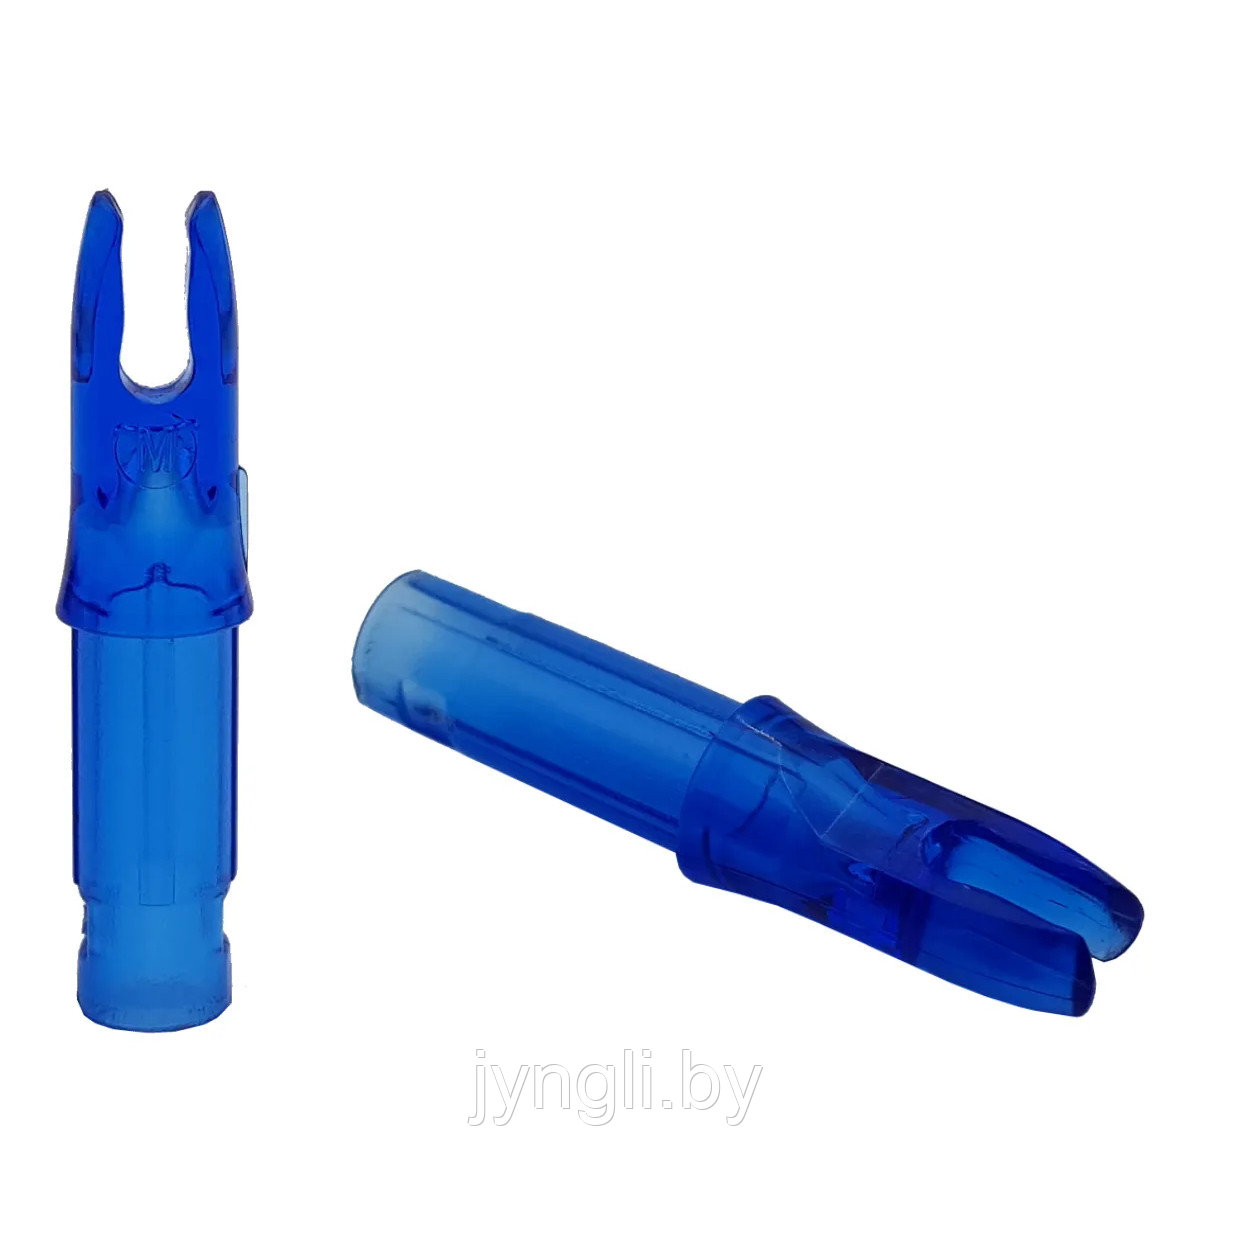 Хвостовик Centershot 6.2 мм для лучных стрел (синий)